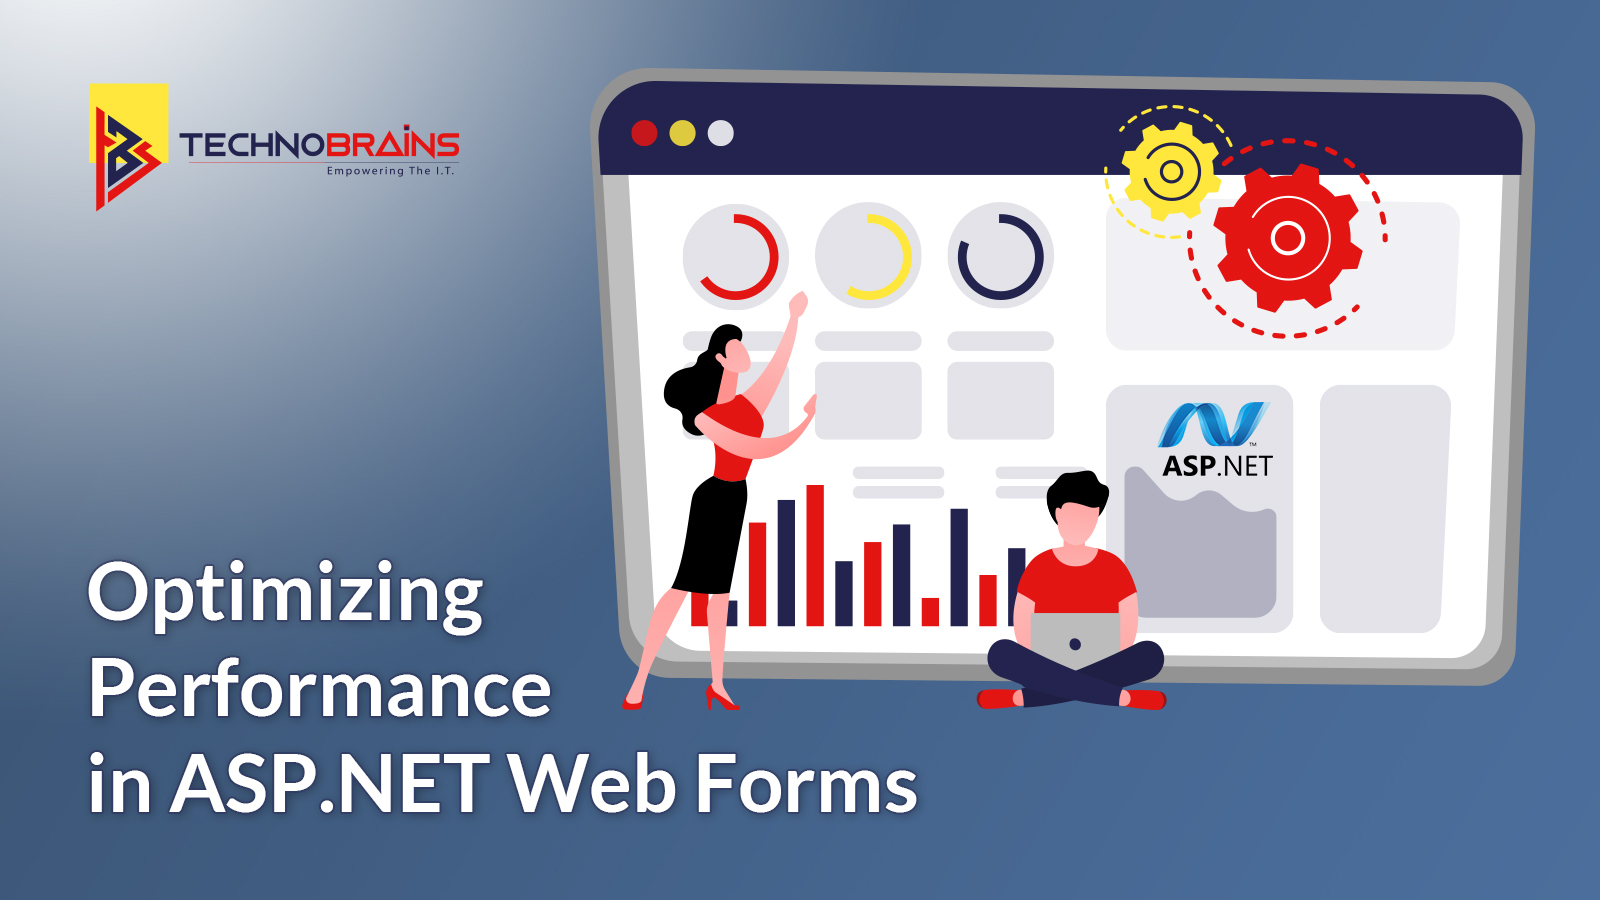 ASP.NET Web Forms